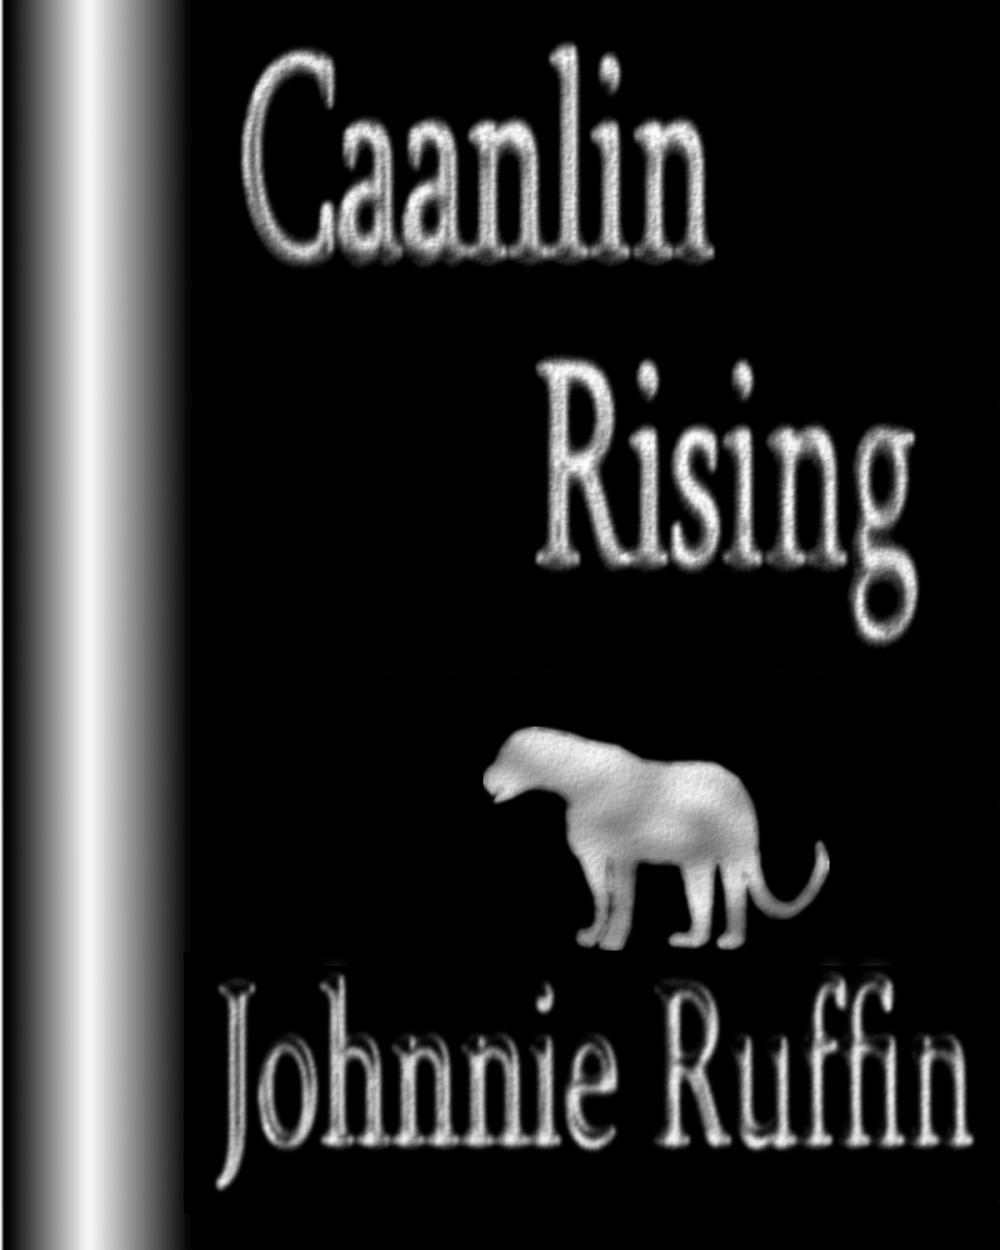 Big bigCover of Caanlin Rising